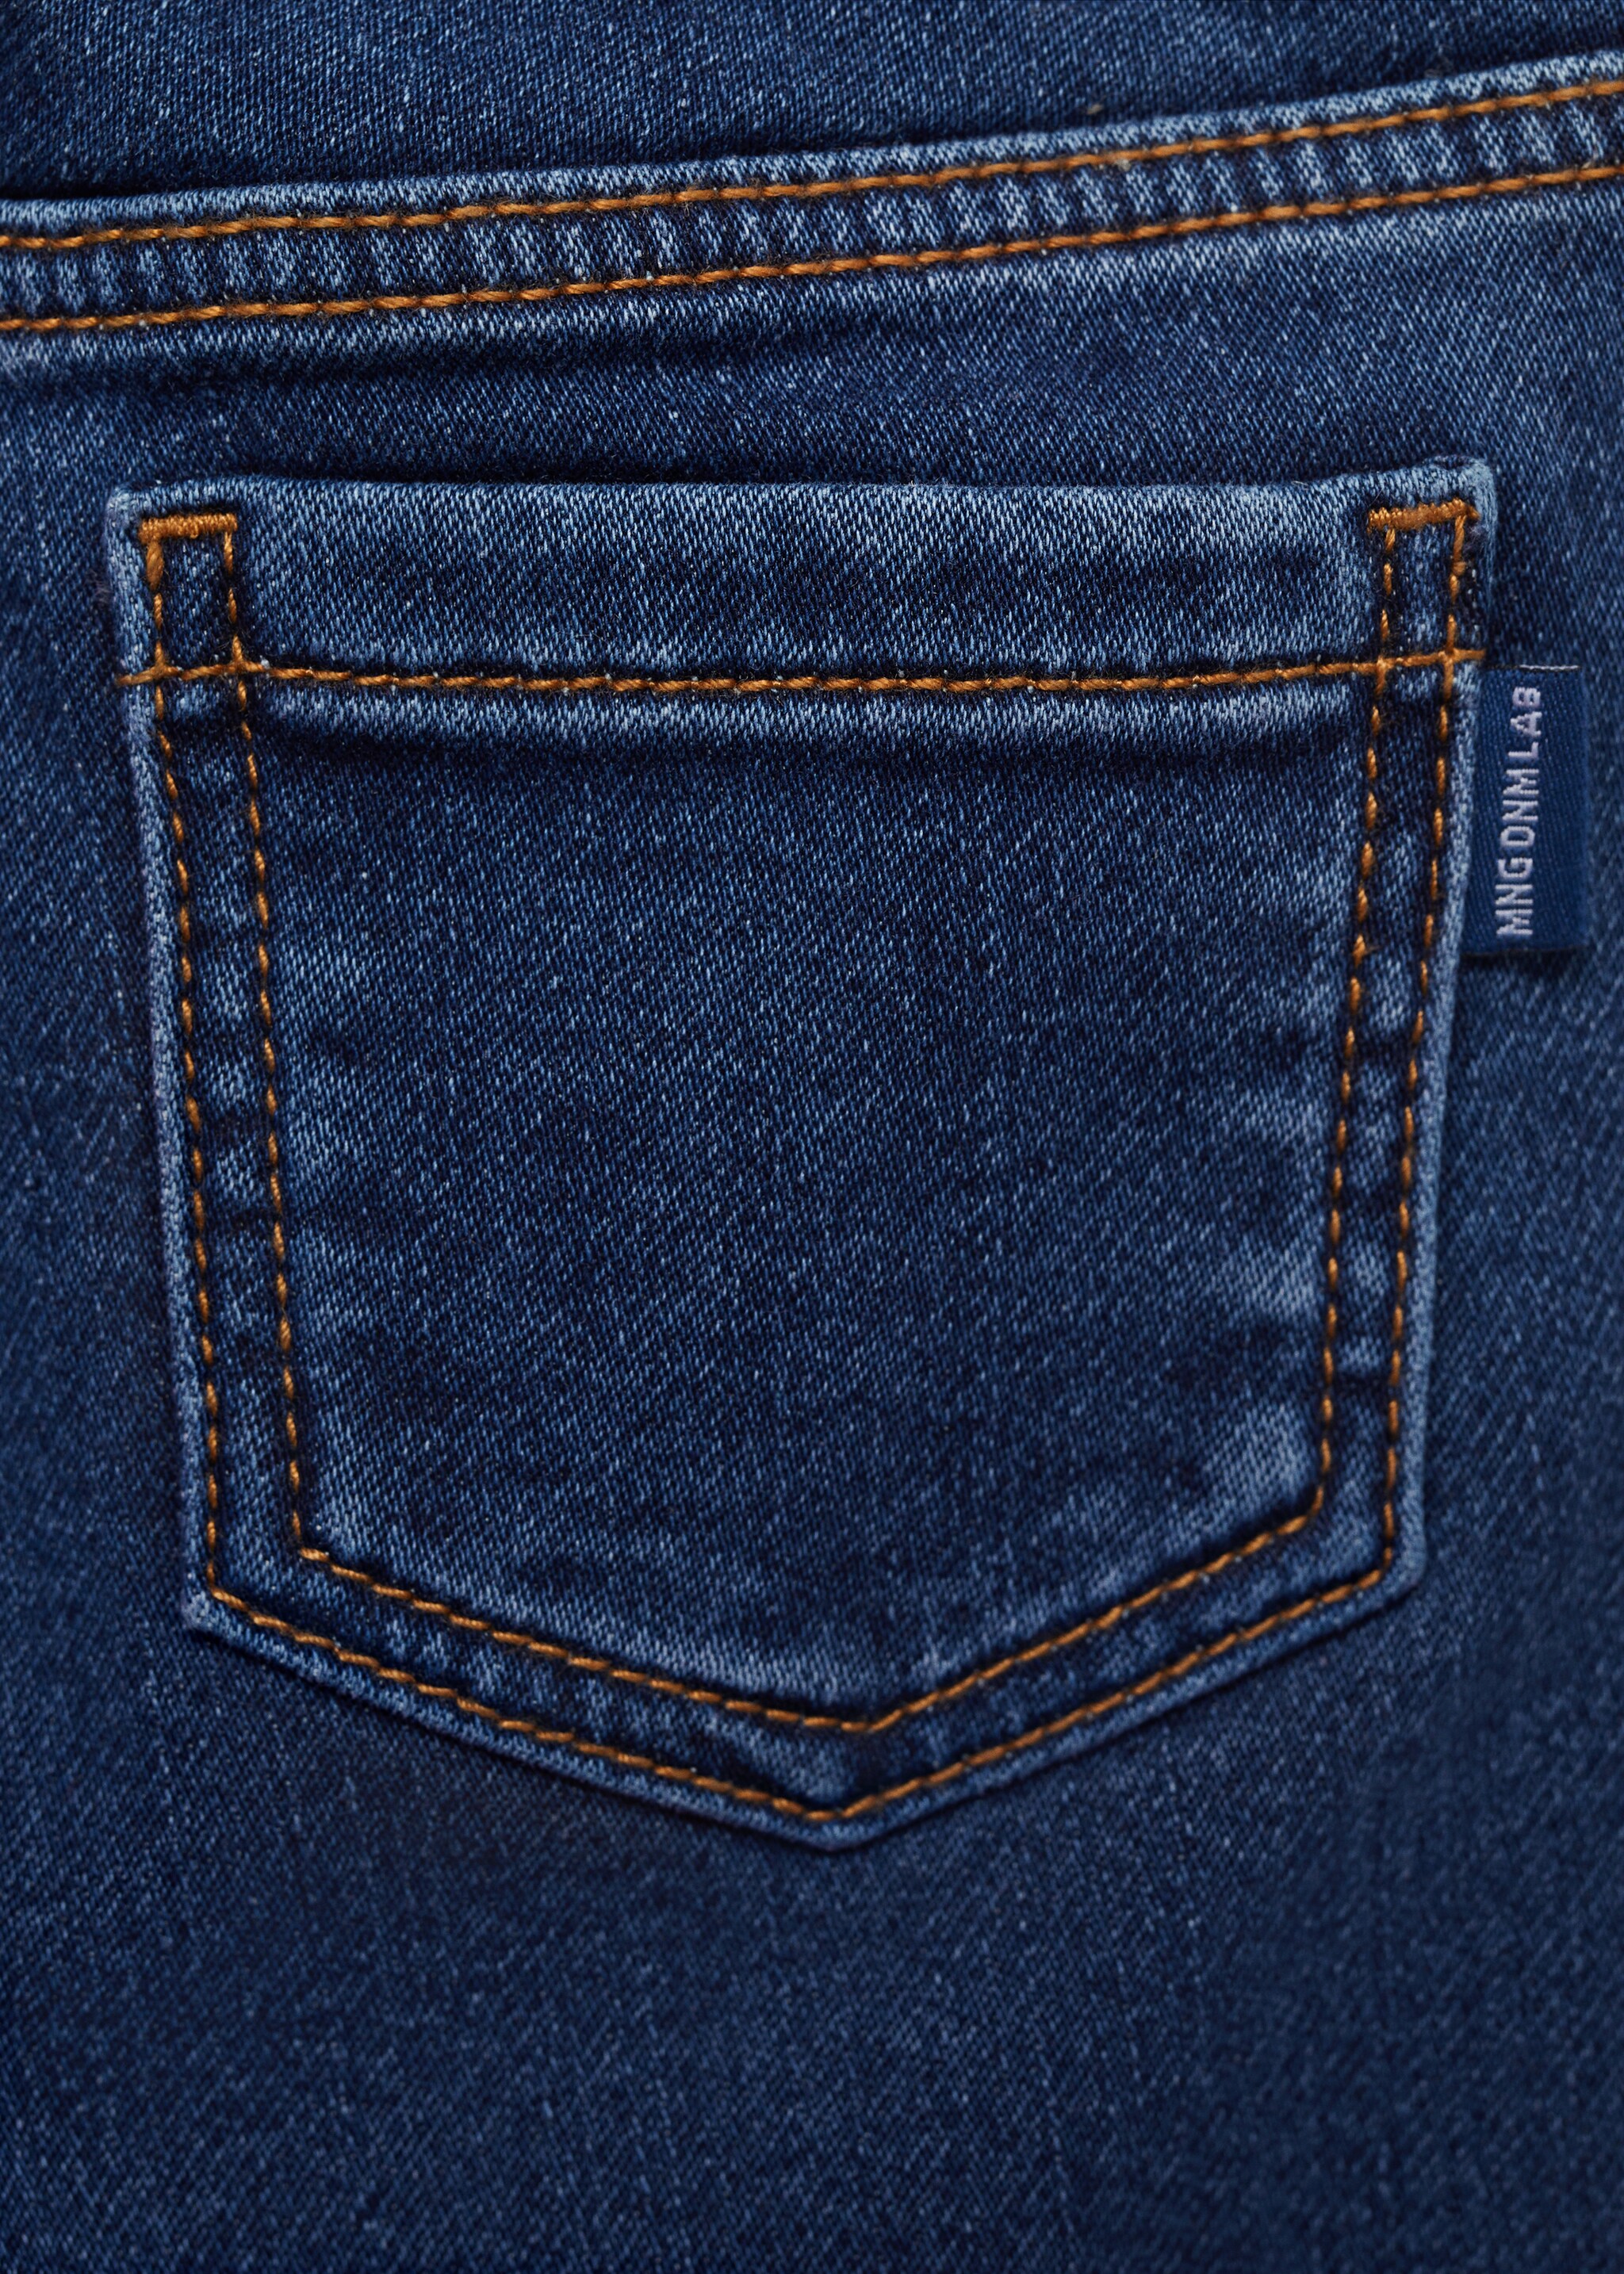 Jean taille élastique - Détail de l'article 0